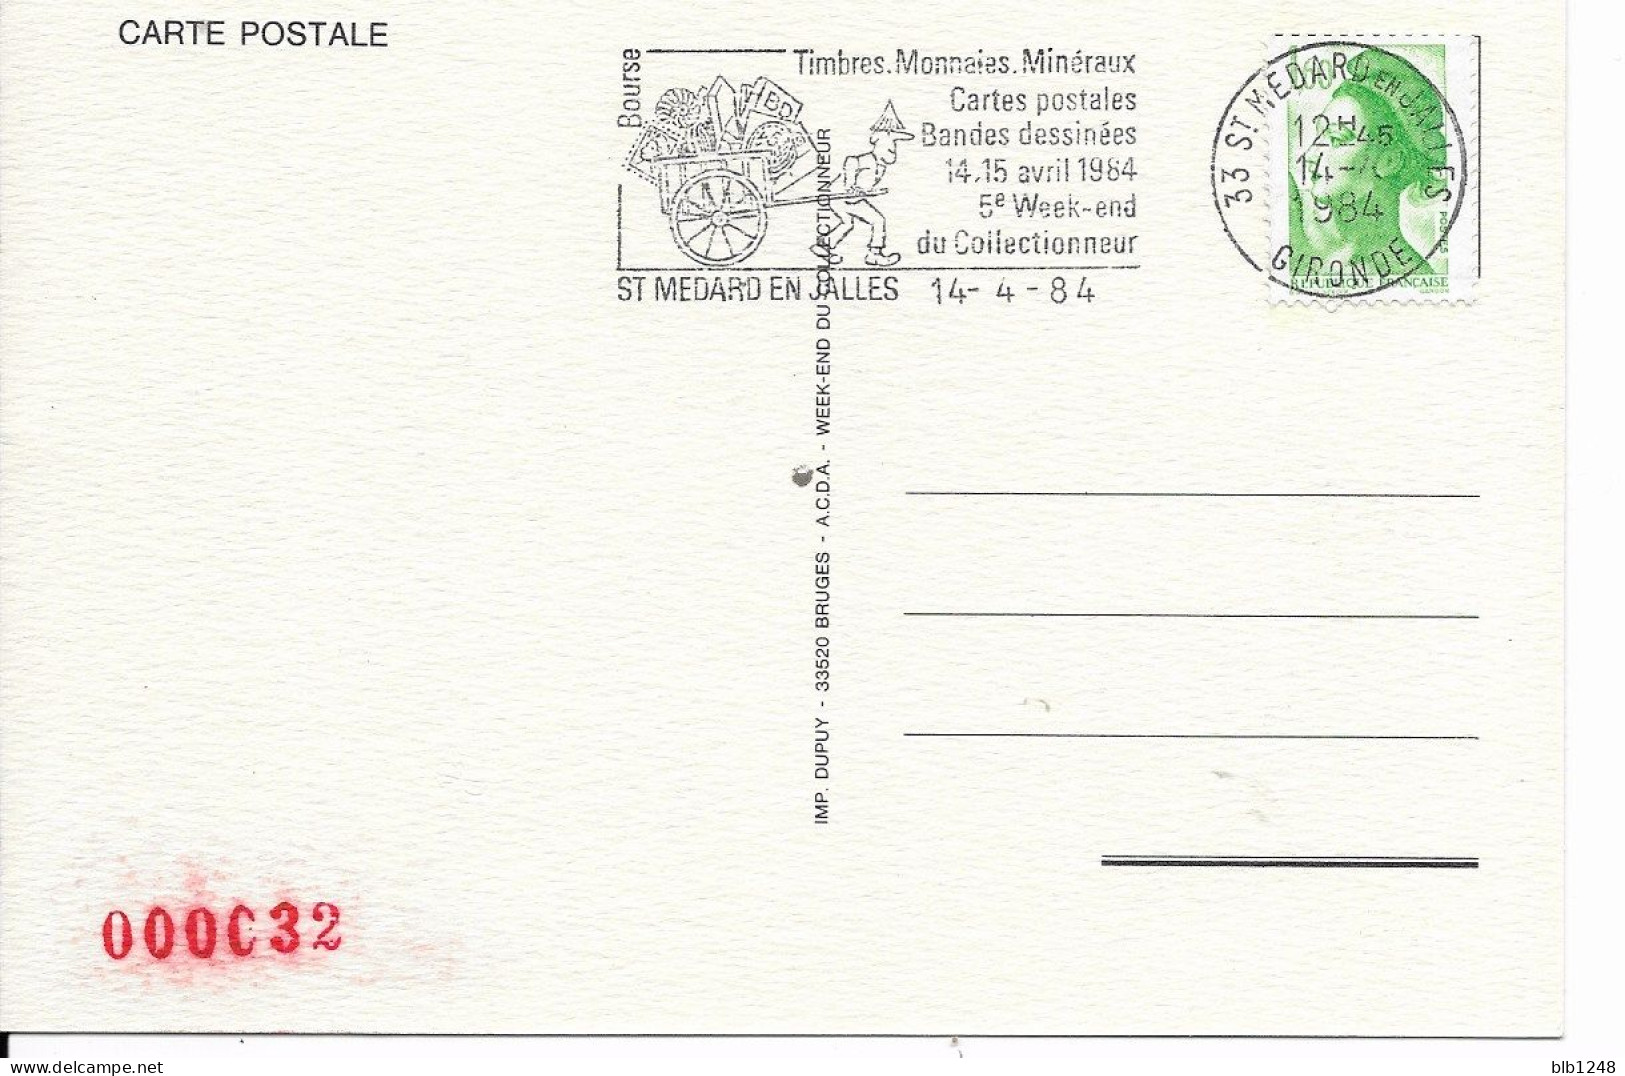 Bourses & Salons De Collections  Saint Medard En Jalles 5eme Week End Du Collectionneur 1984 - Sammlerbörsen & Sammlerausstellungen